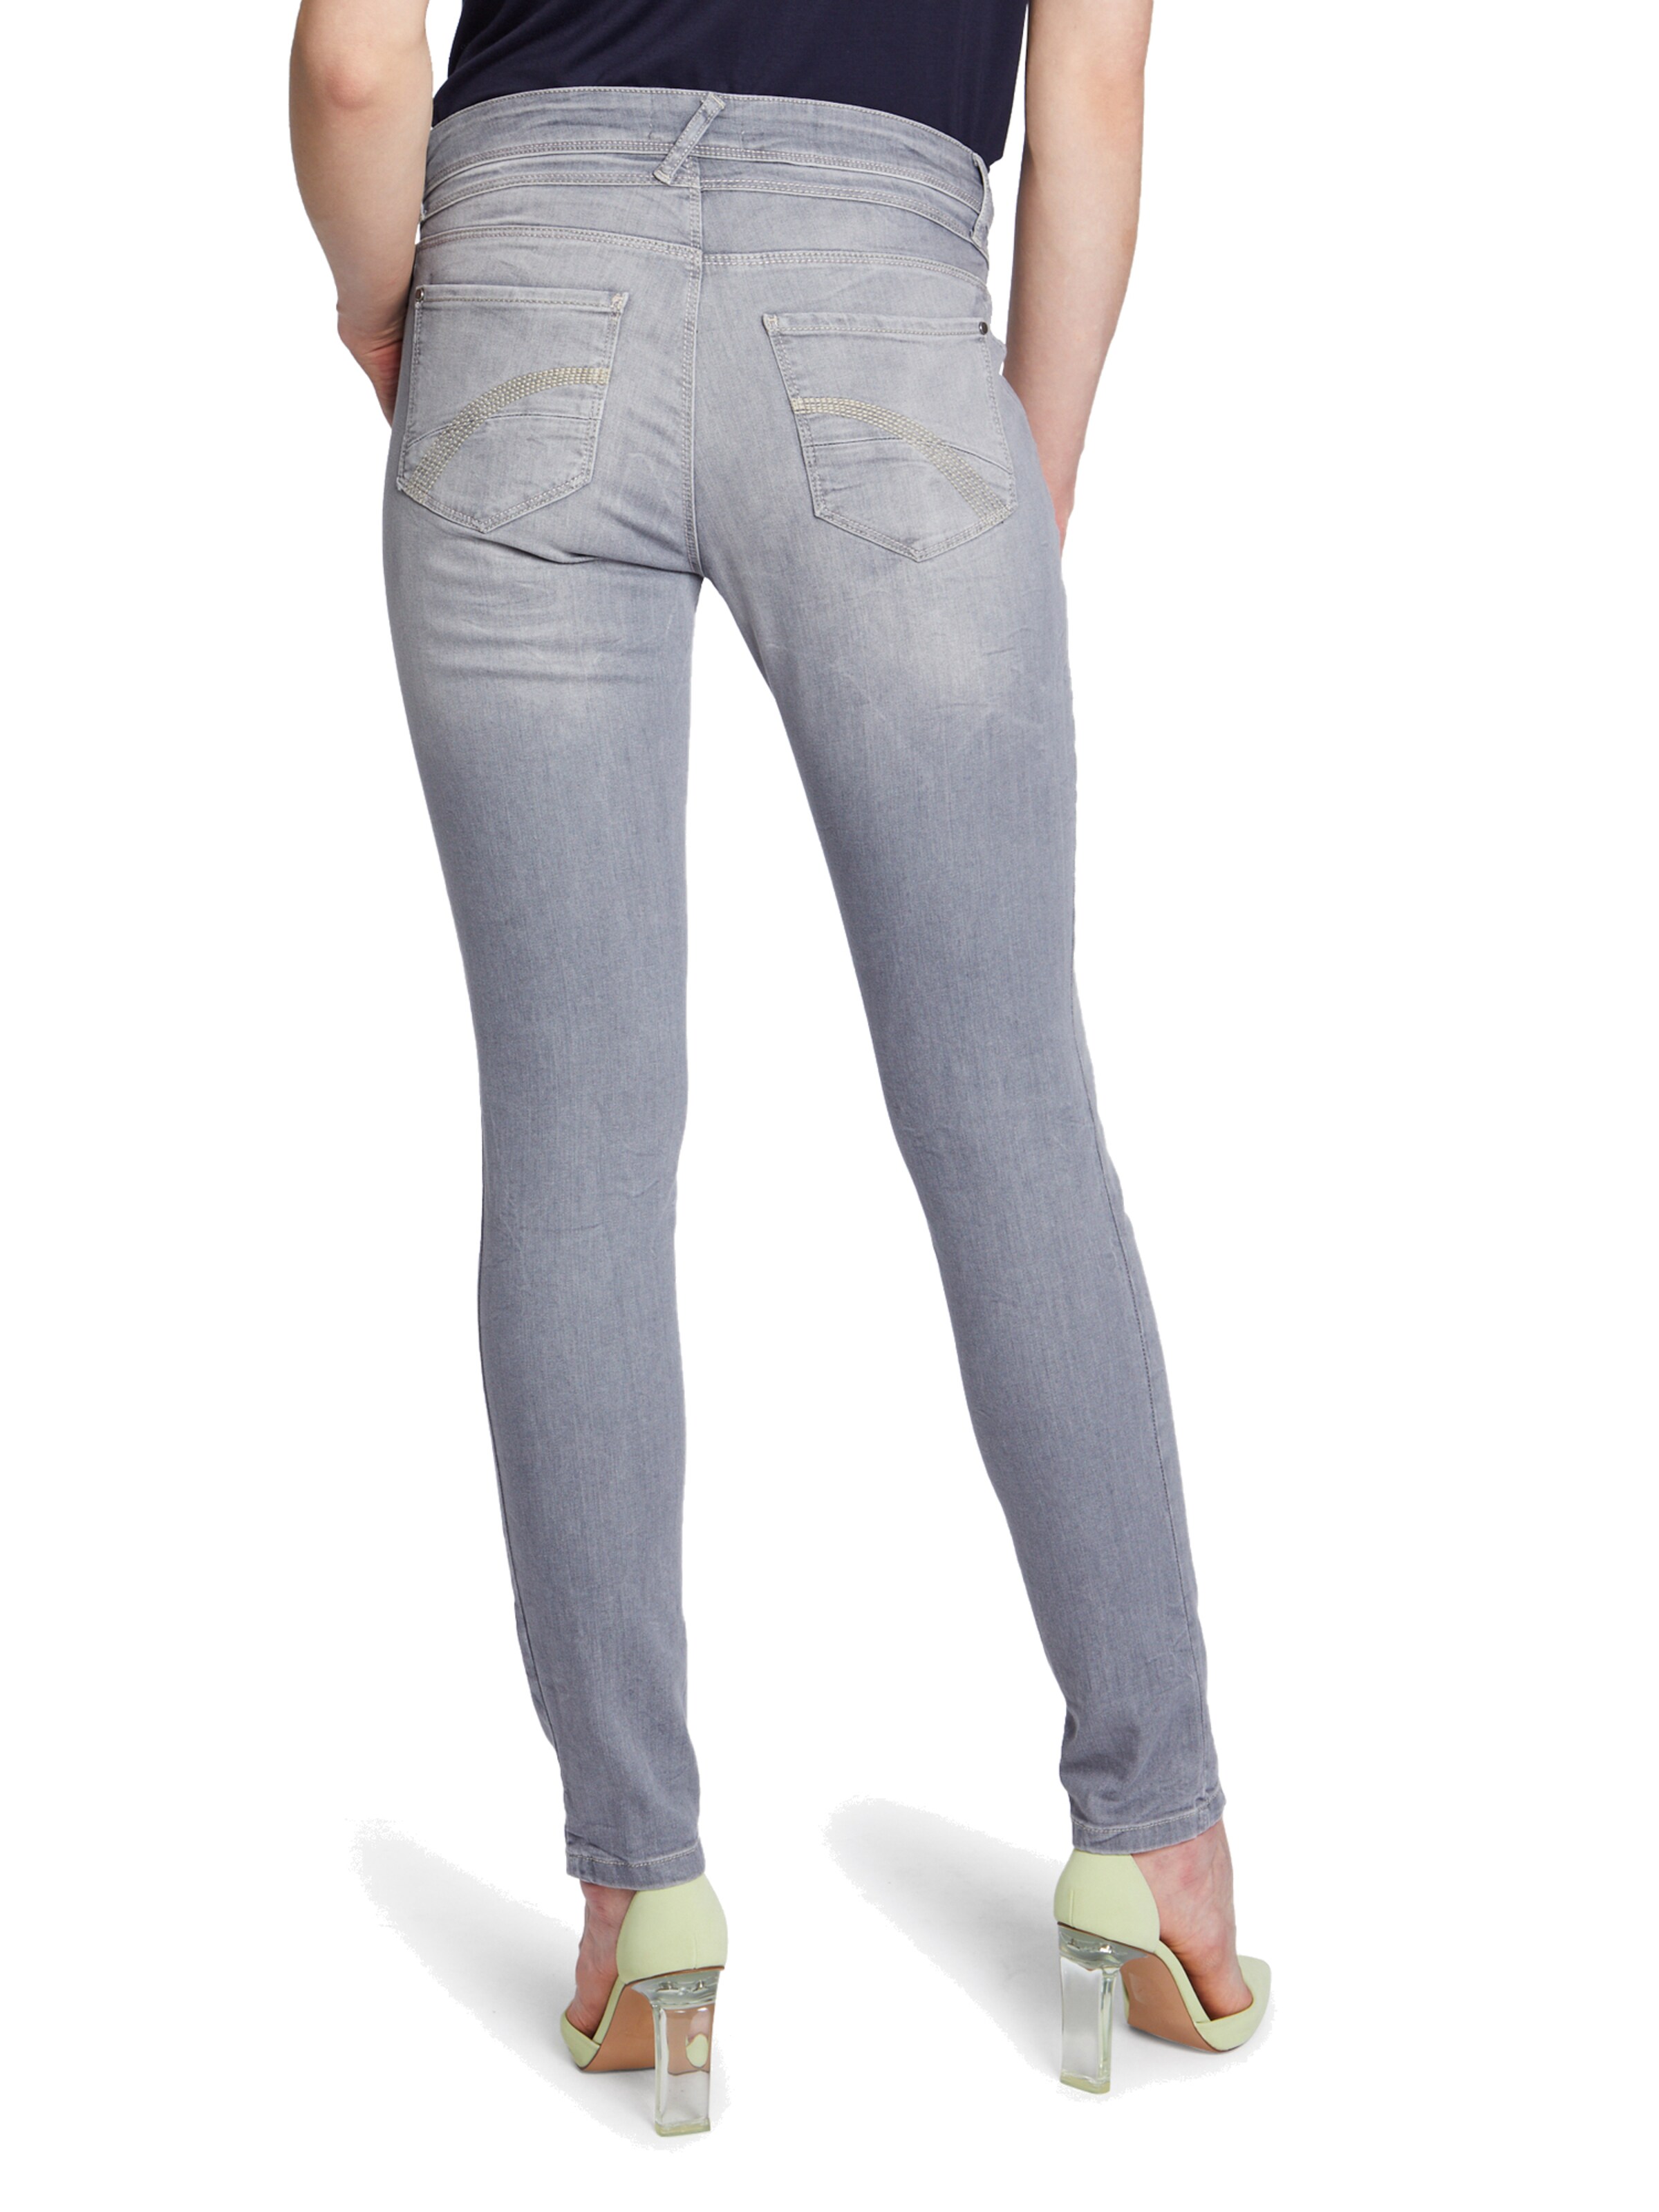 Frauen Jeans Cartoon Boyfriend-Hose mit Reißverschluss in Beige - YB19761